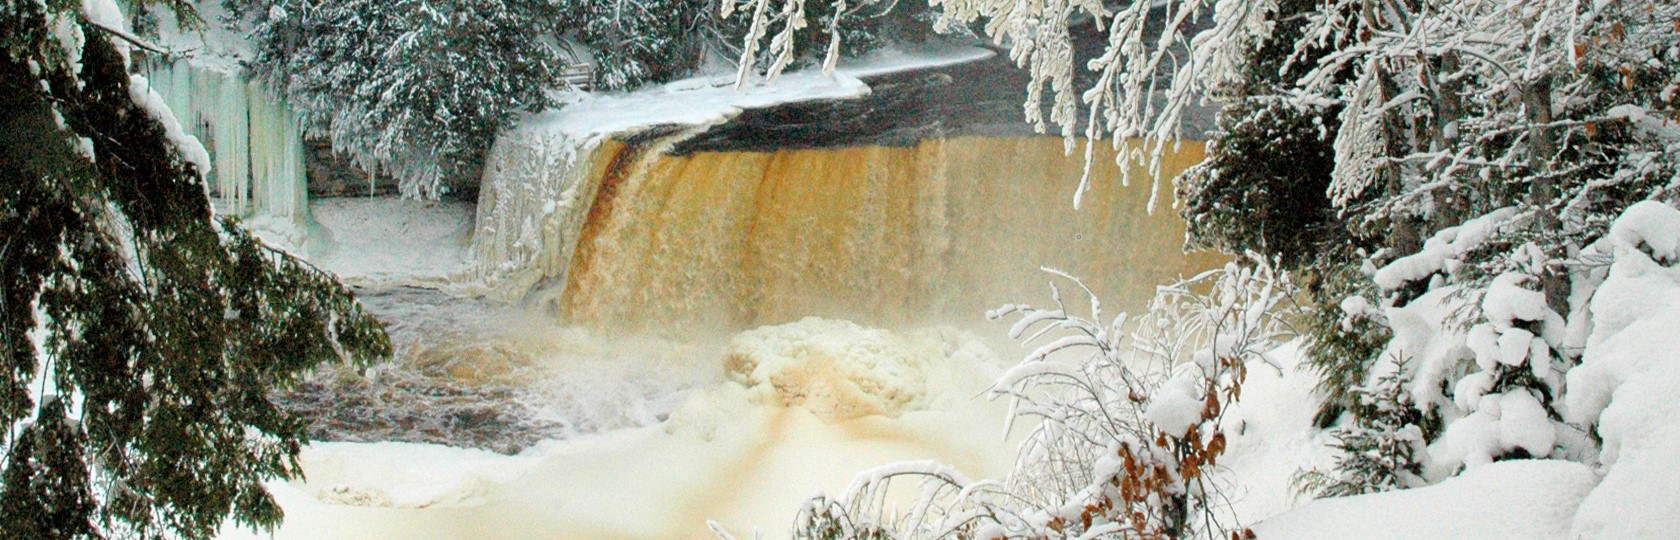 Tahquamenon Falls in Winter